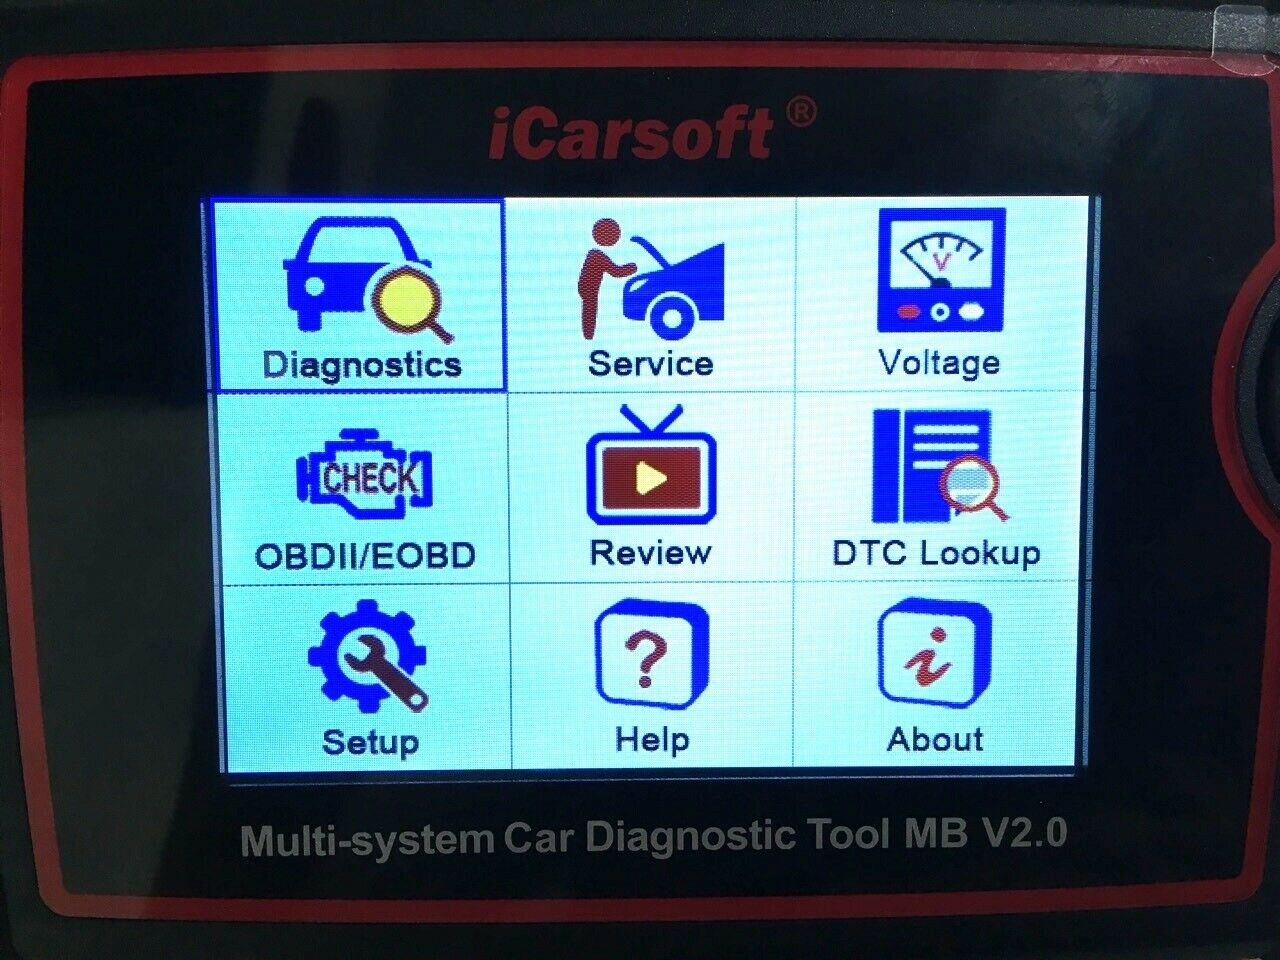 iCarsoft MB V2.0 OBD2 Diagnostic Tool For Merce...